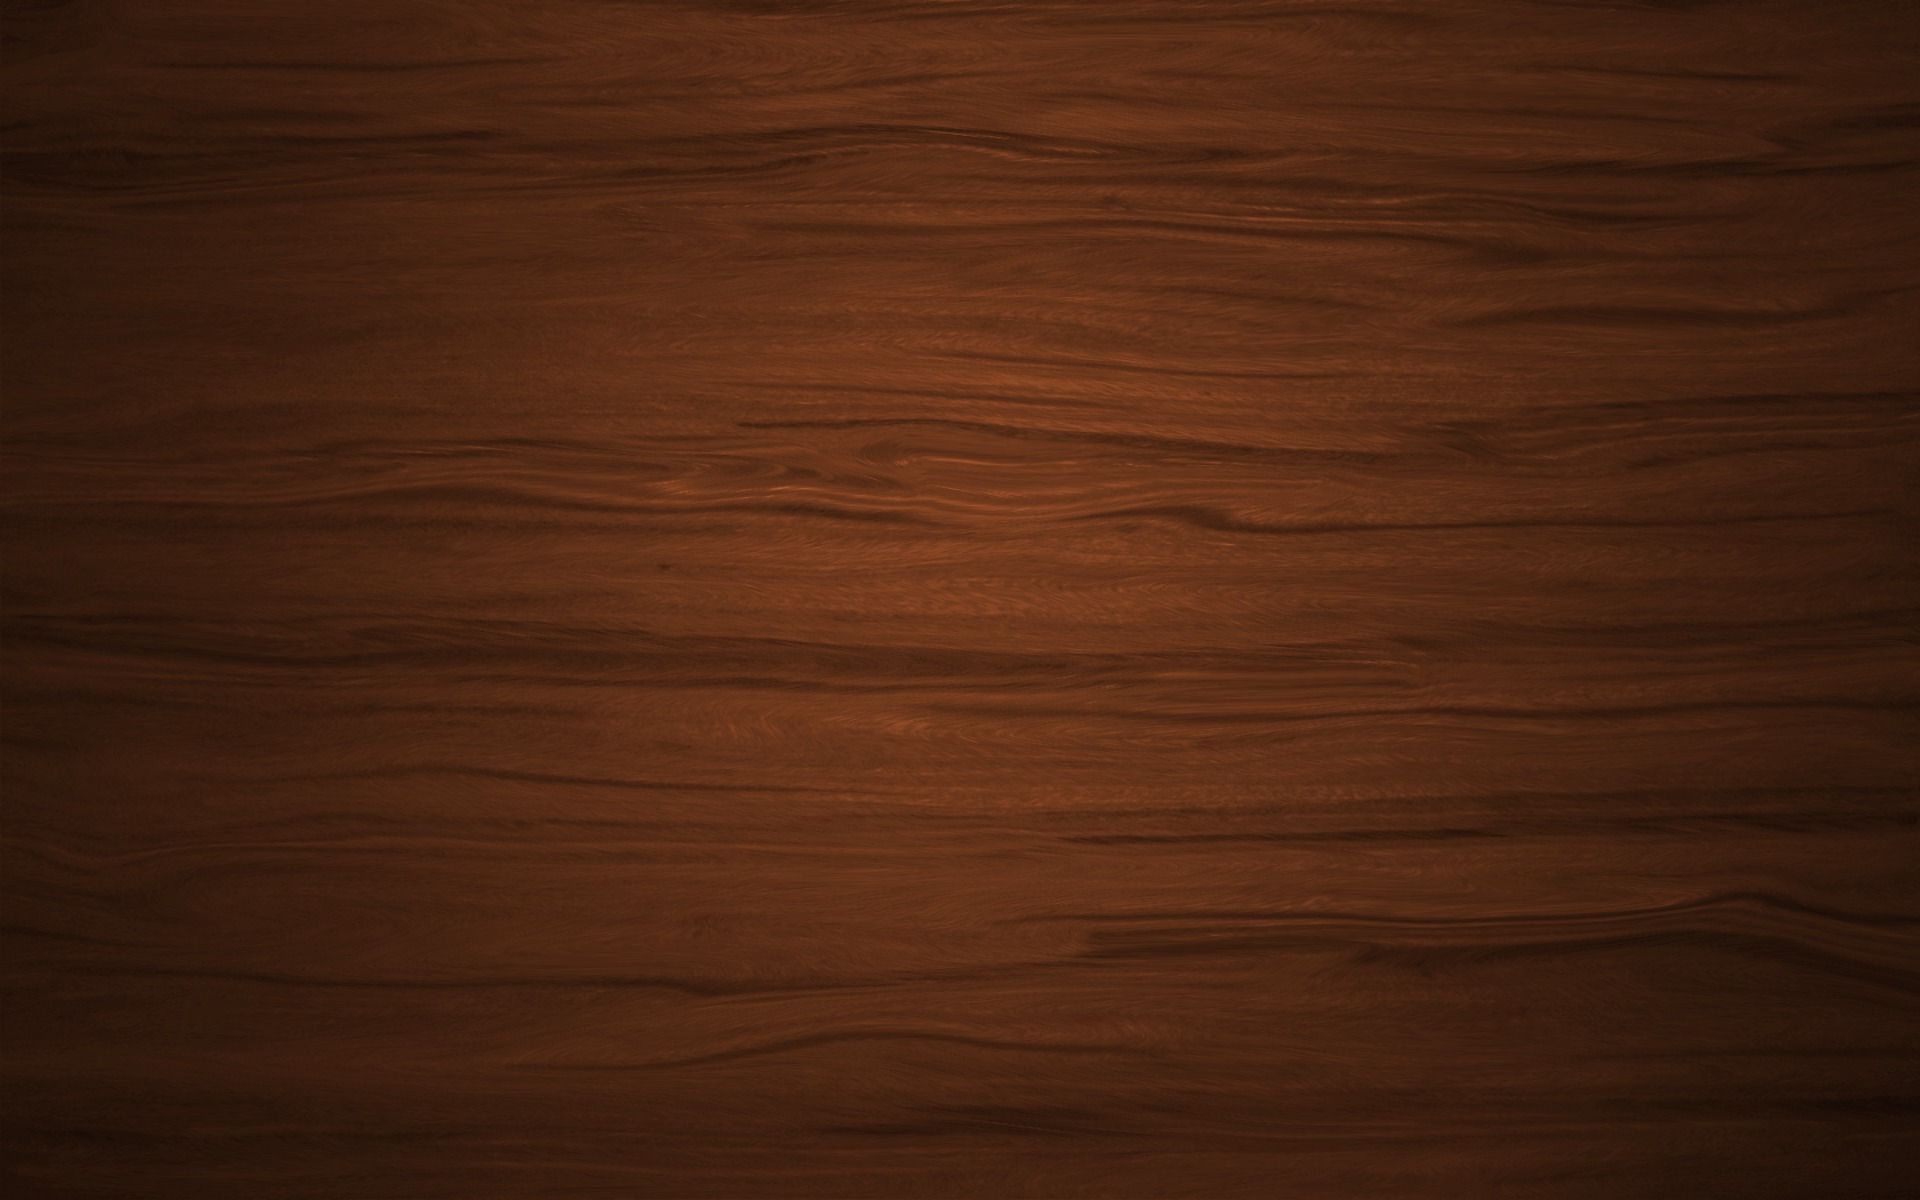 Wood Texture Share Wallpaper